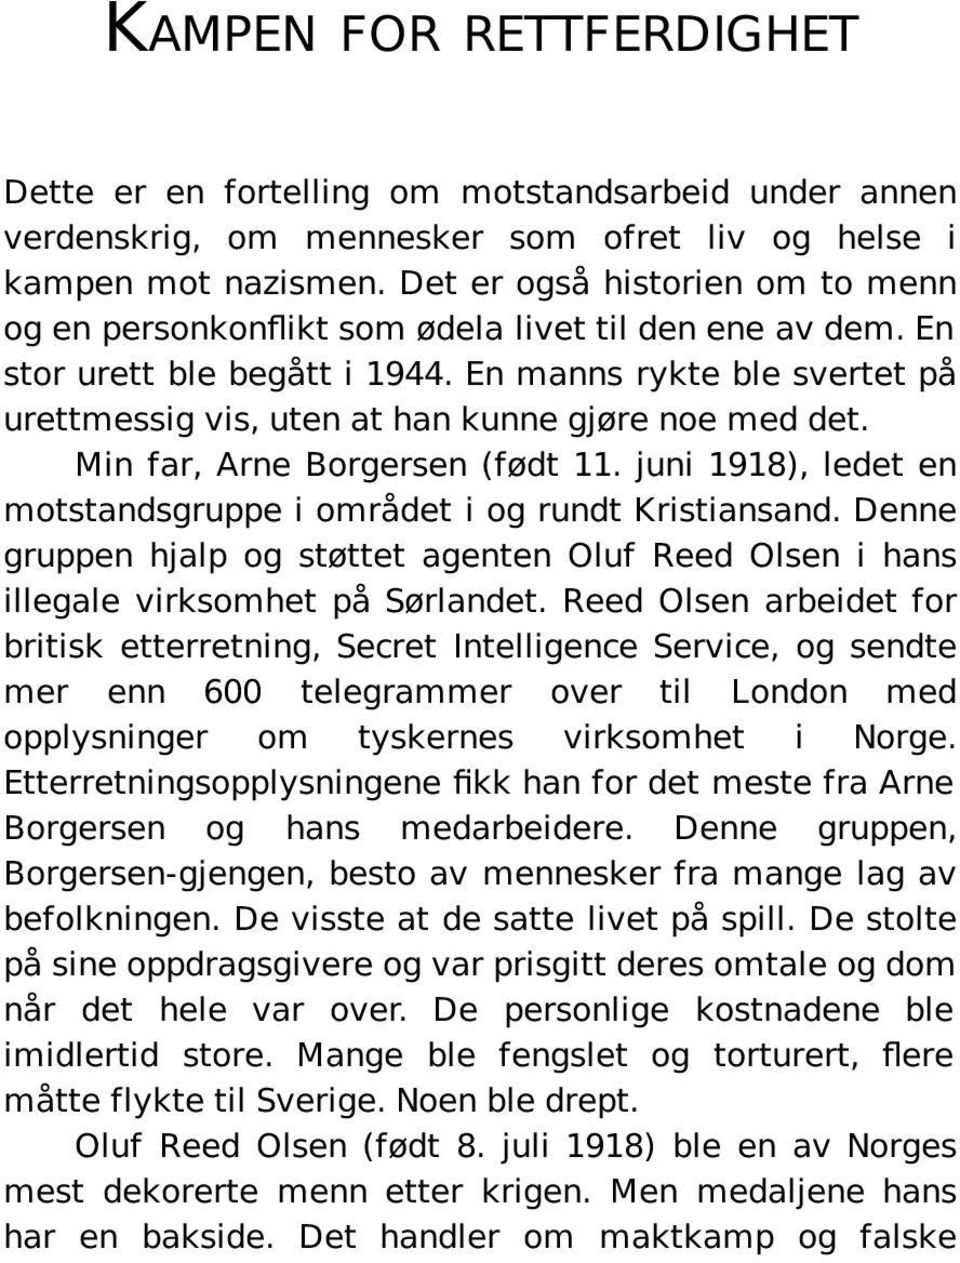 En manns rykte ble svertet på urettmessig vis, uten at han kunne gjøre noe med det. Min far, Arne Borgersen (født 11. juni 1918), ledet en motstandsgruppe i området i og rundt Kristiansand.